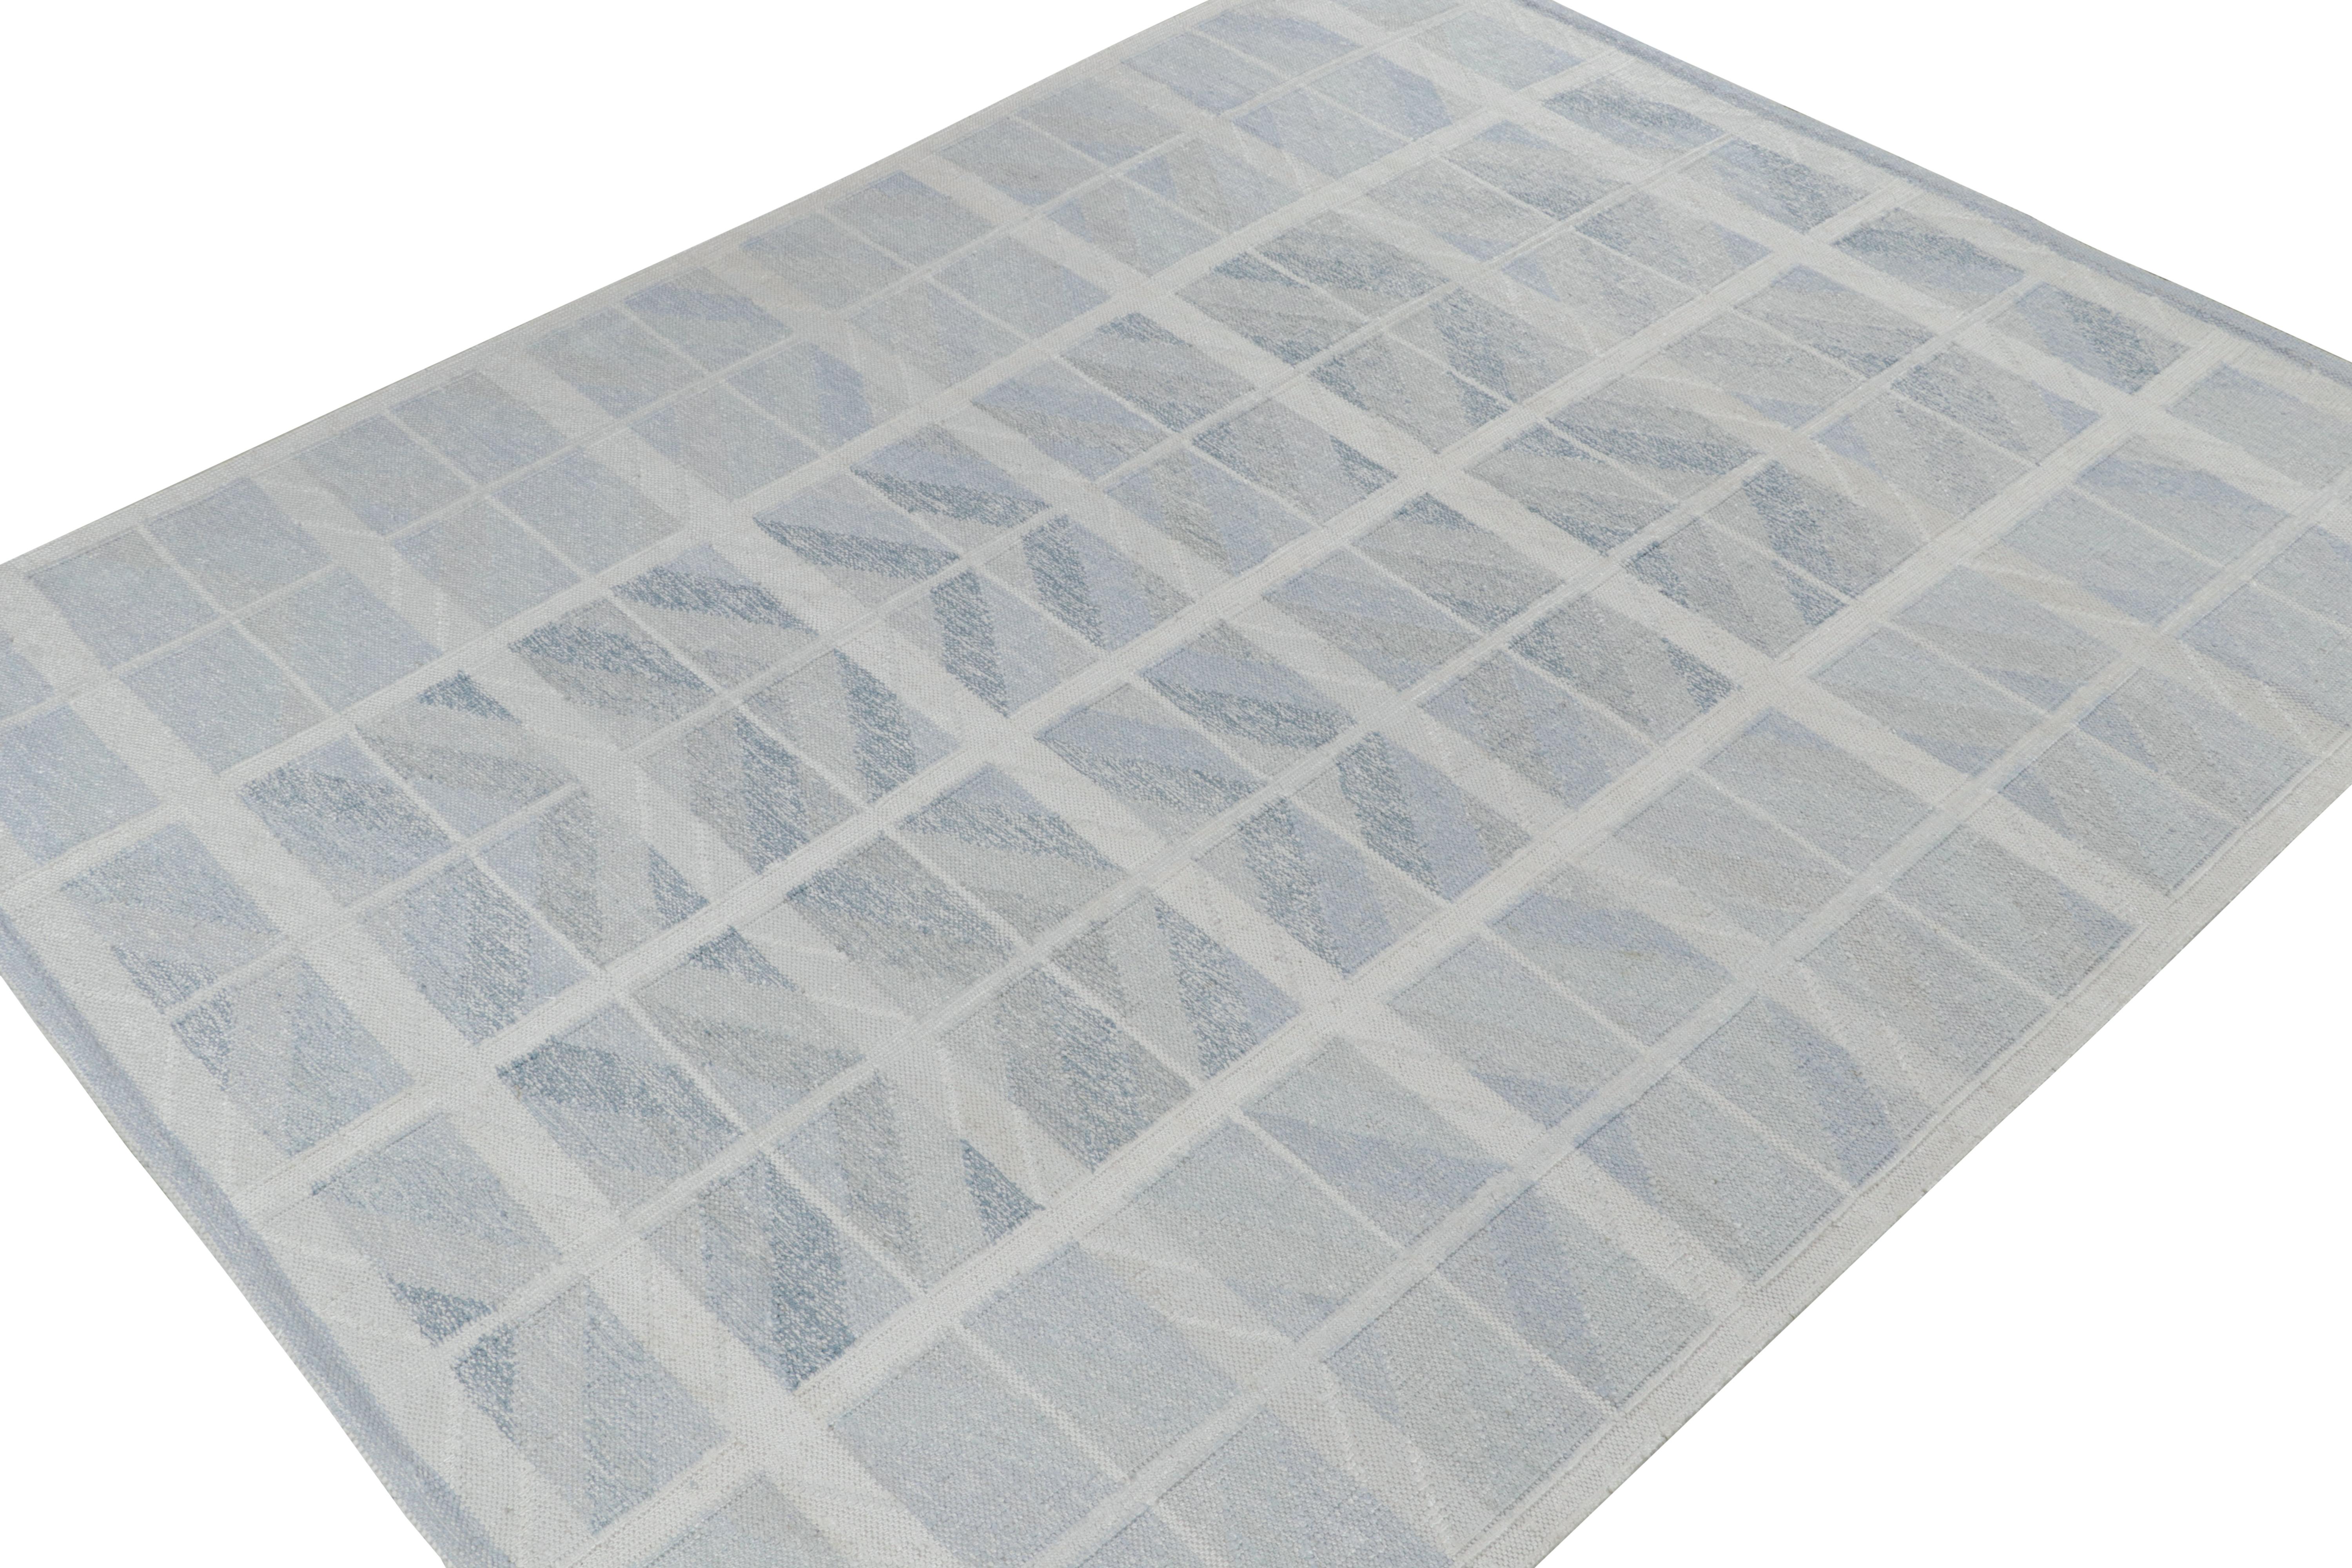 Ce tapis kilim 9×12 de style suédois fait partie de la nouvelle ligne 